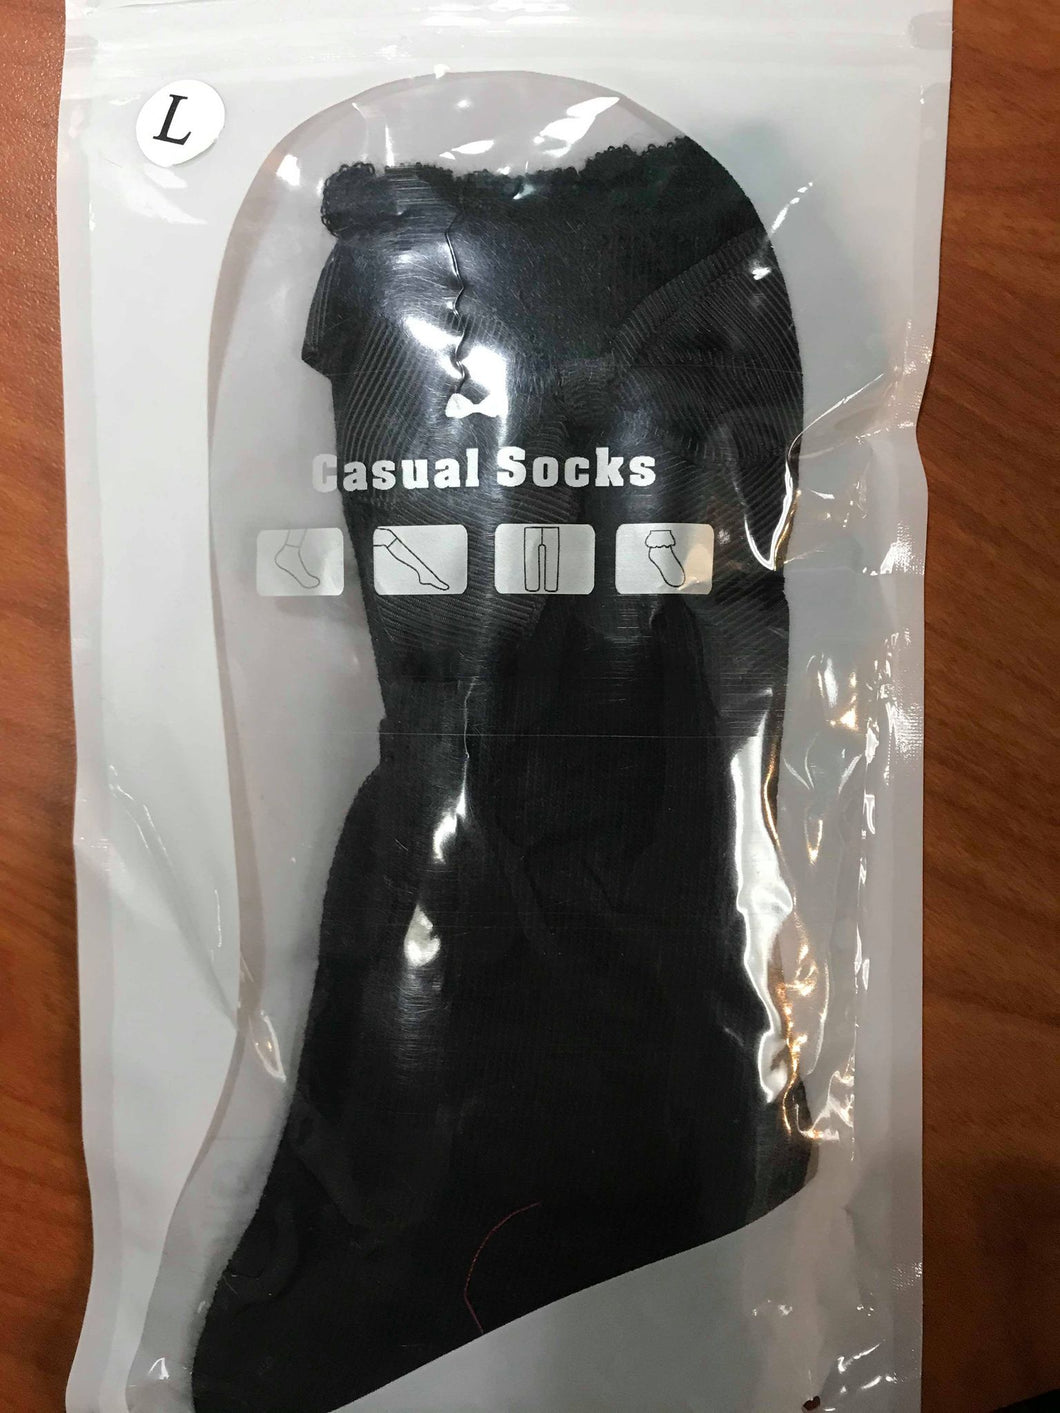 Black Knee Socks